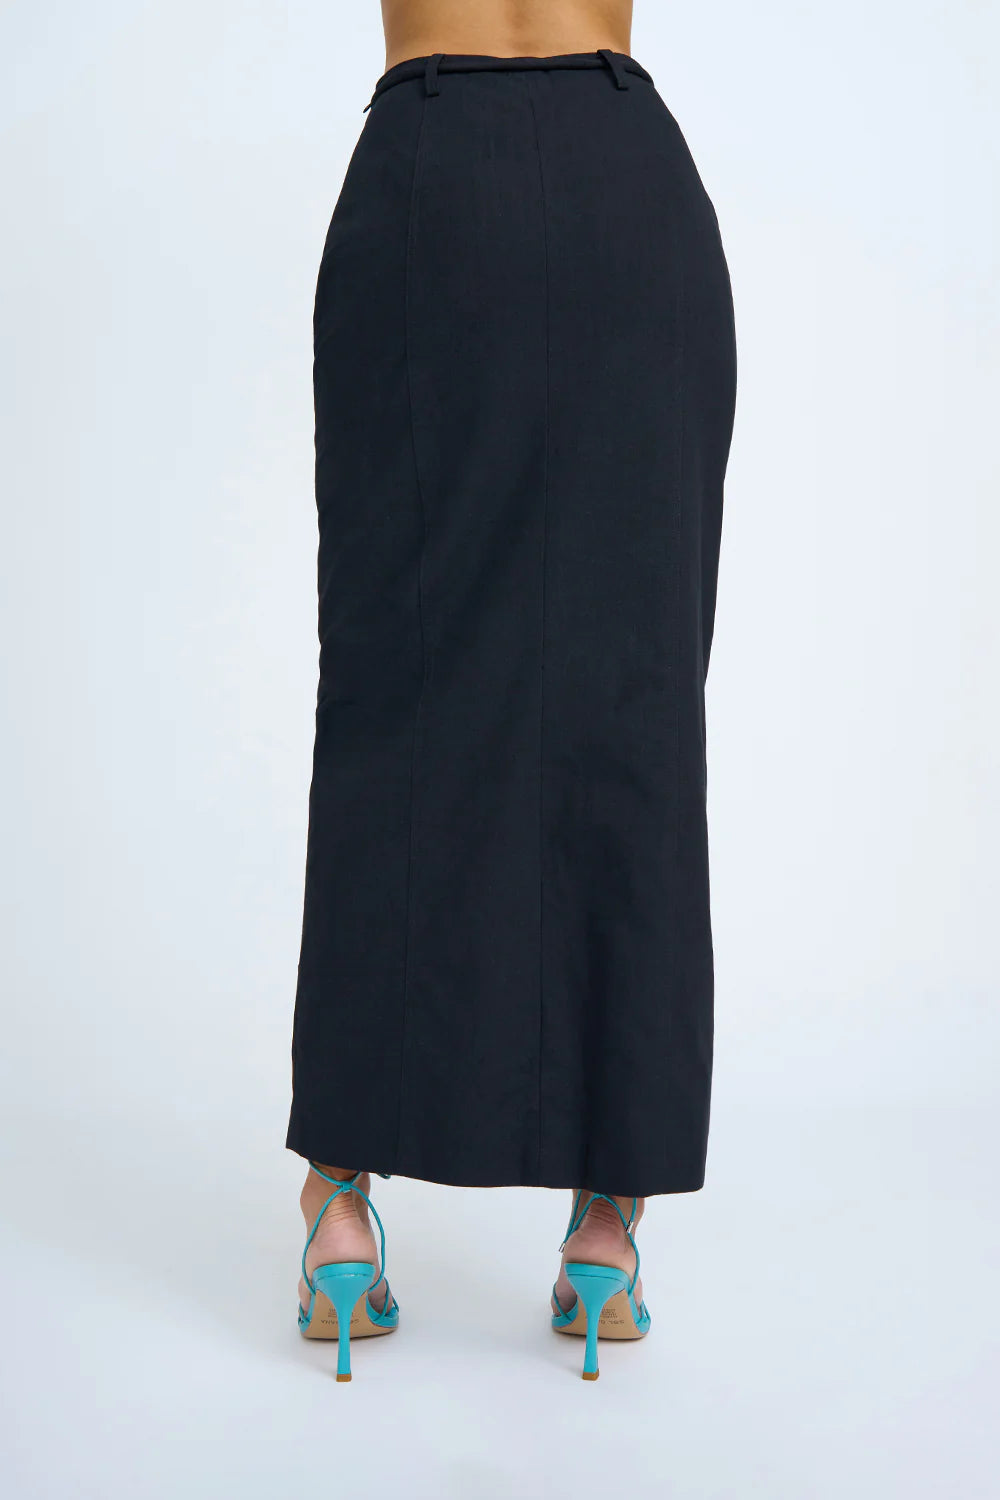 Asami pocket pencil skirt, black